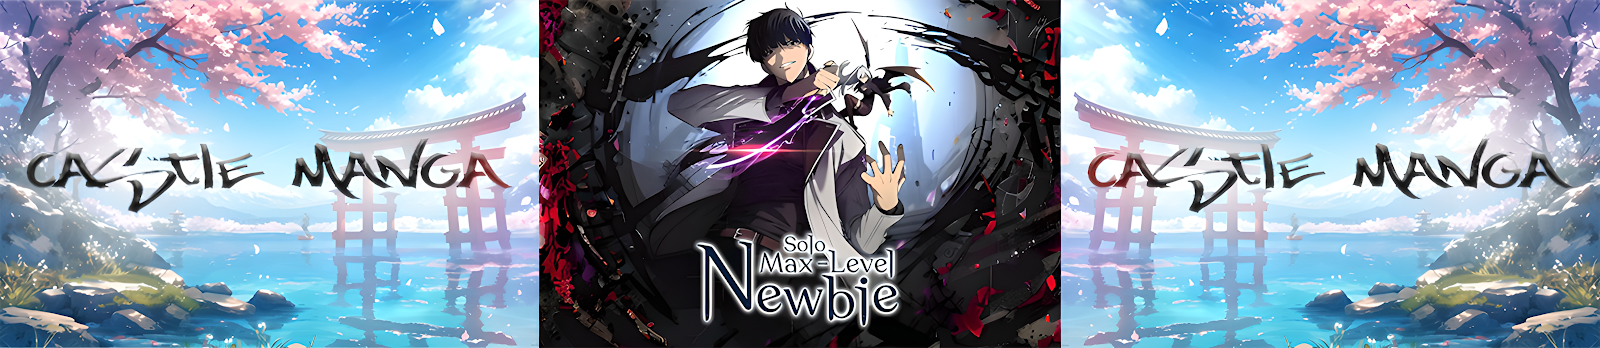 Solo Max-Level Newbie Read